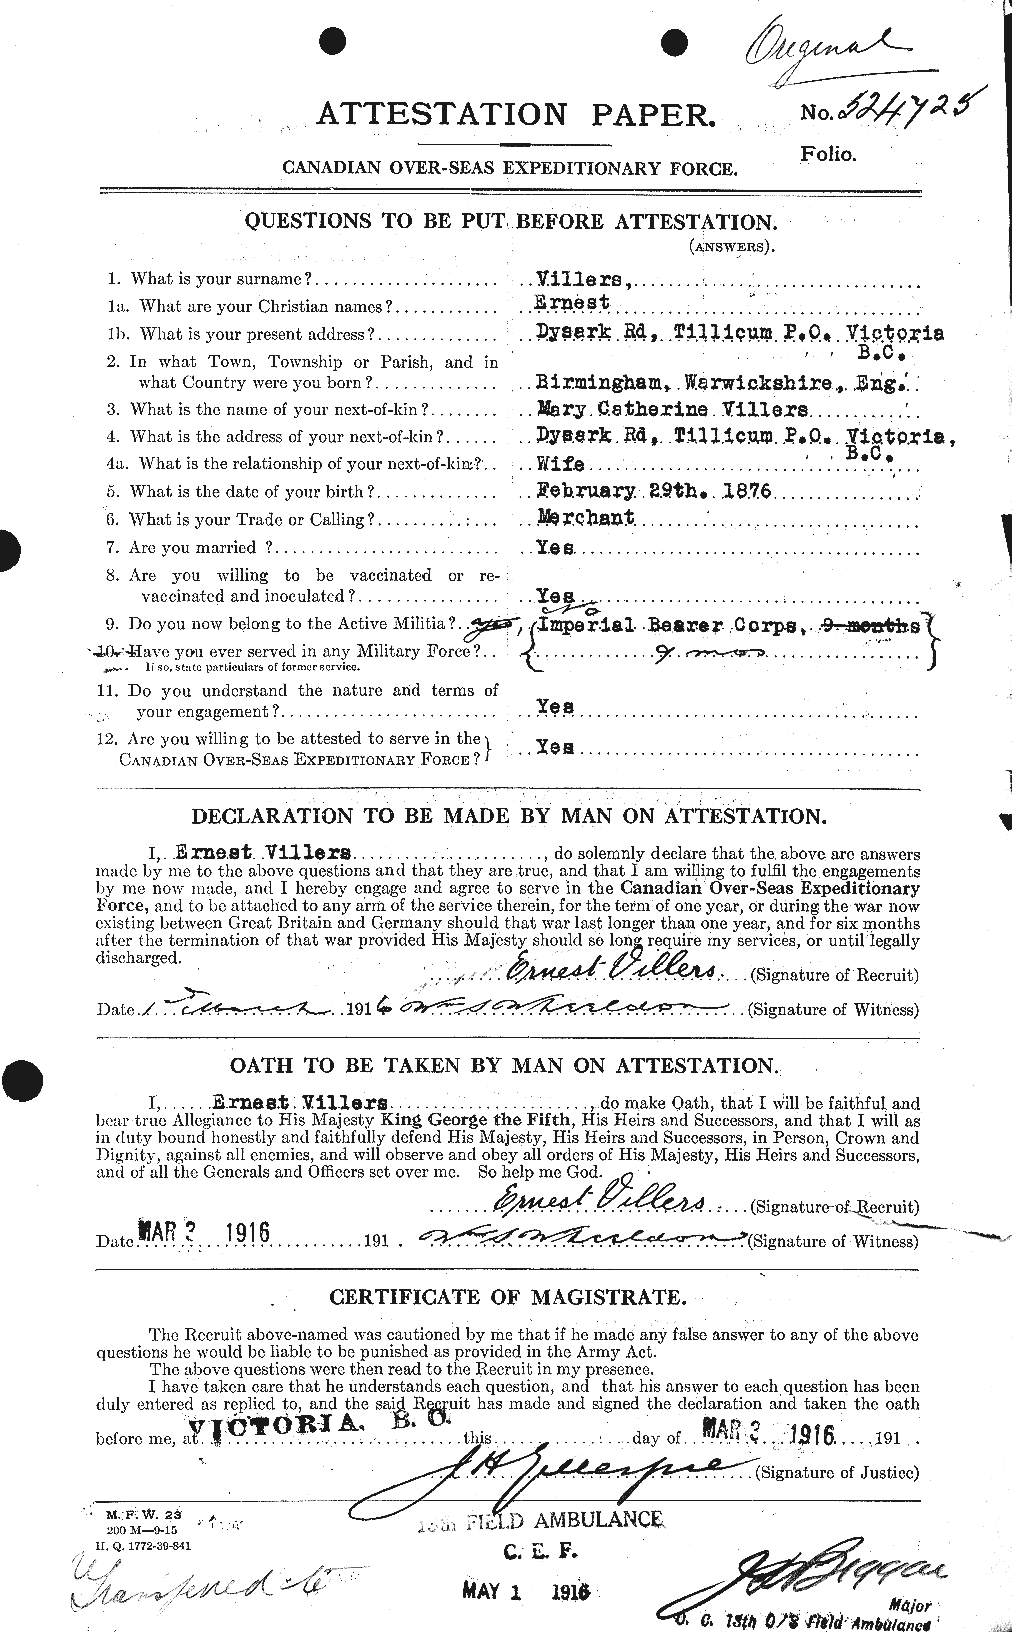 Dossiers du Personnel de la Première Guerre mondiale - CEC 653894a